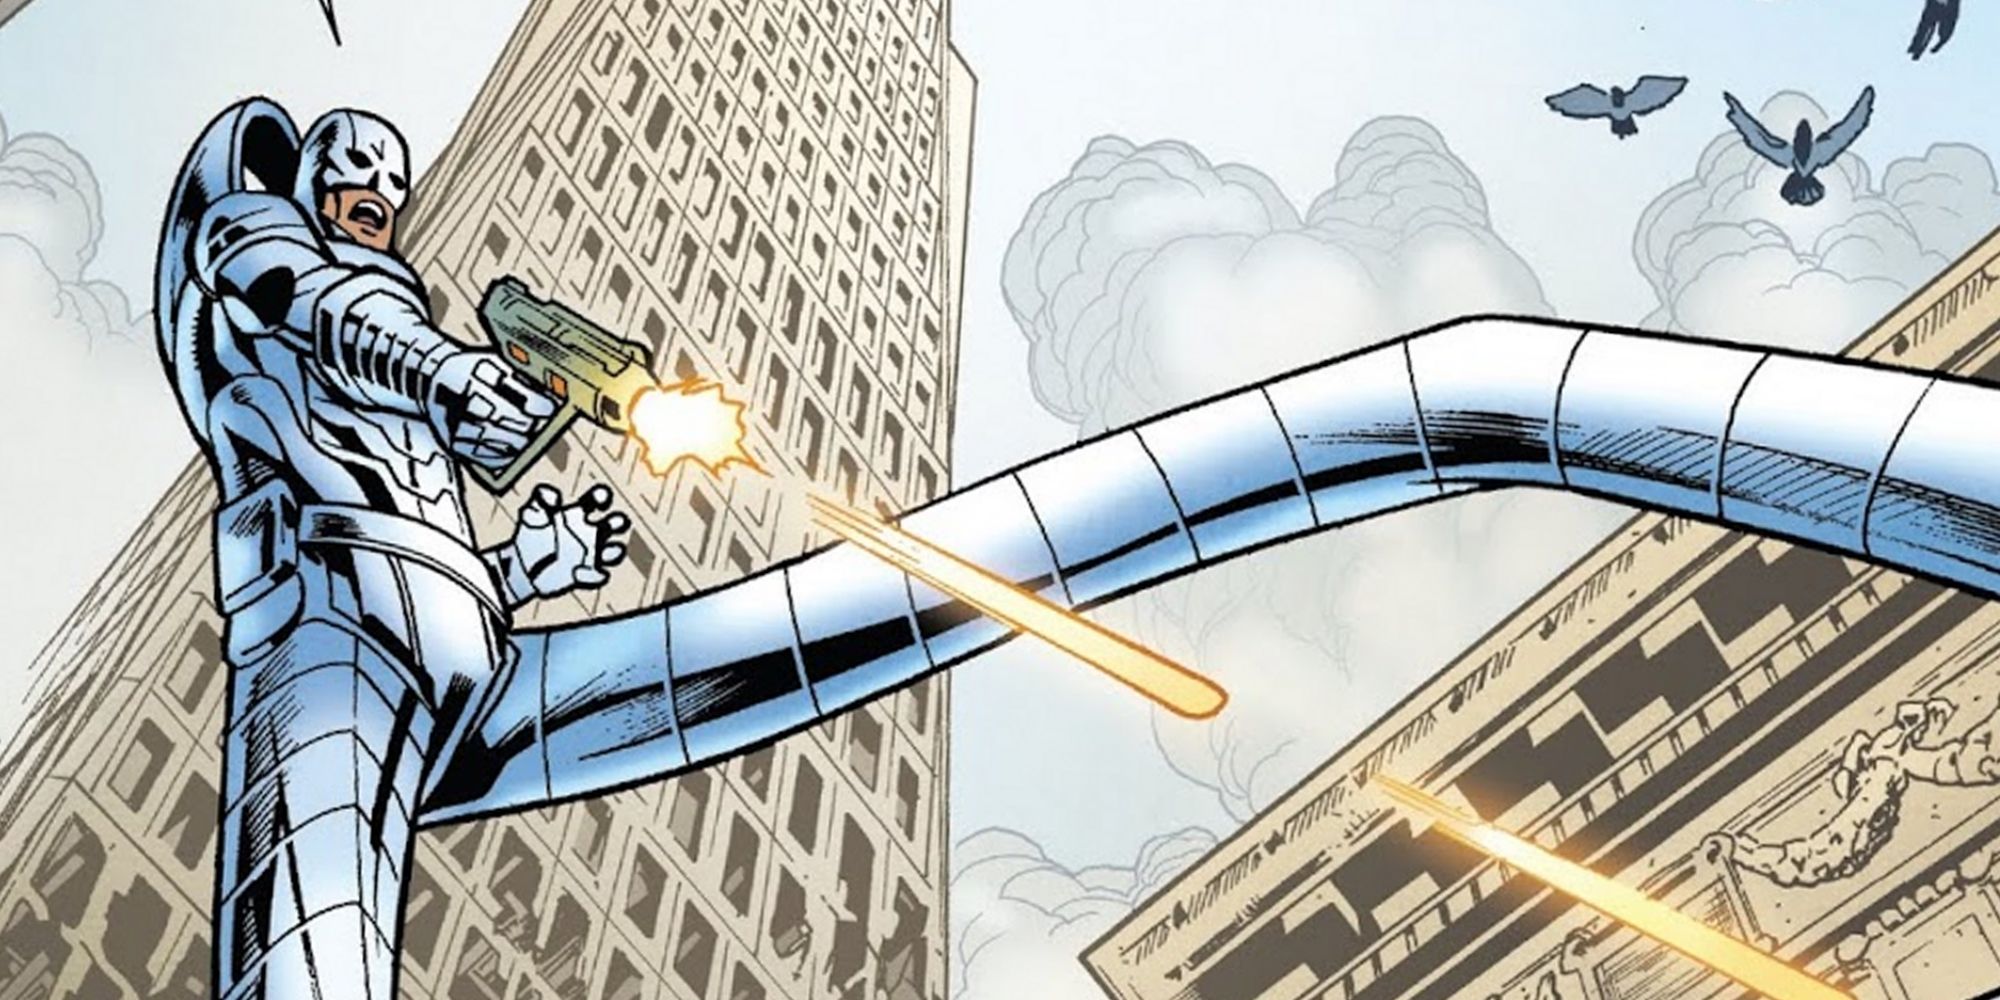 Stilt-Man, a.k.a. Wilbur Day, from Marvel Comics